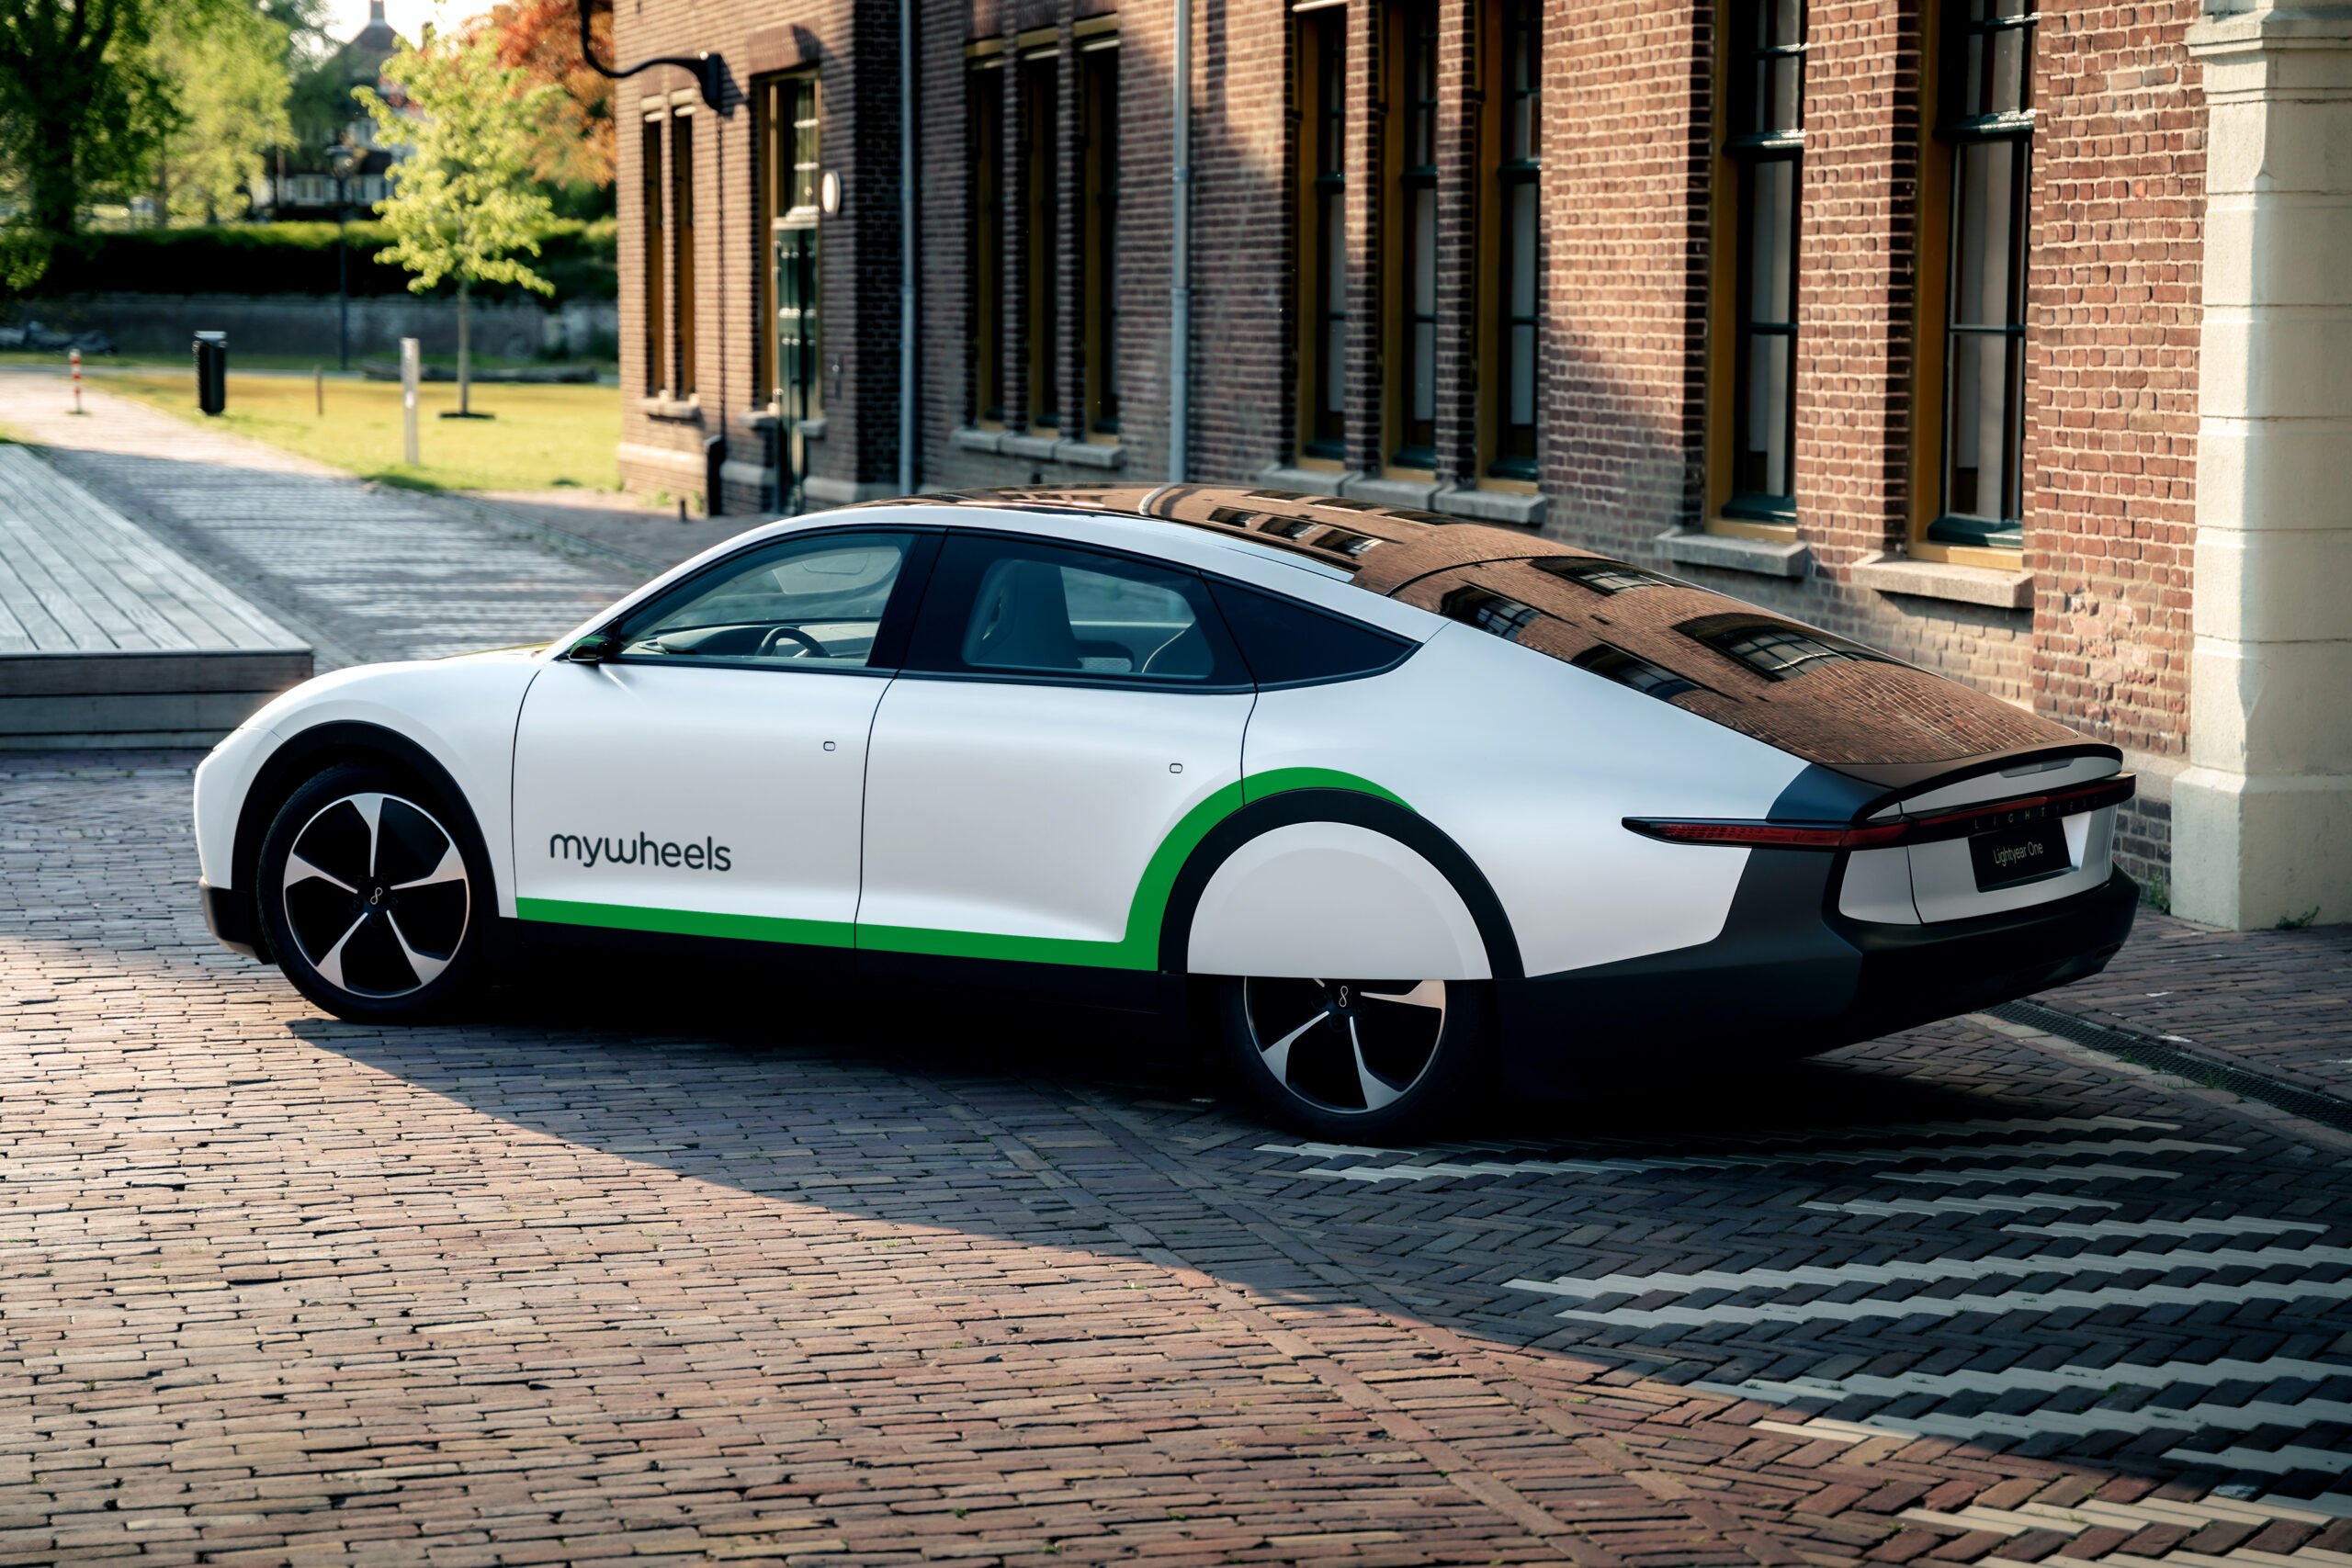 Hyper-efficiënte auto’s ontlasten stroomnet. ‘Tijd voor een energielabel op e-auto’s’